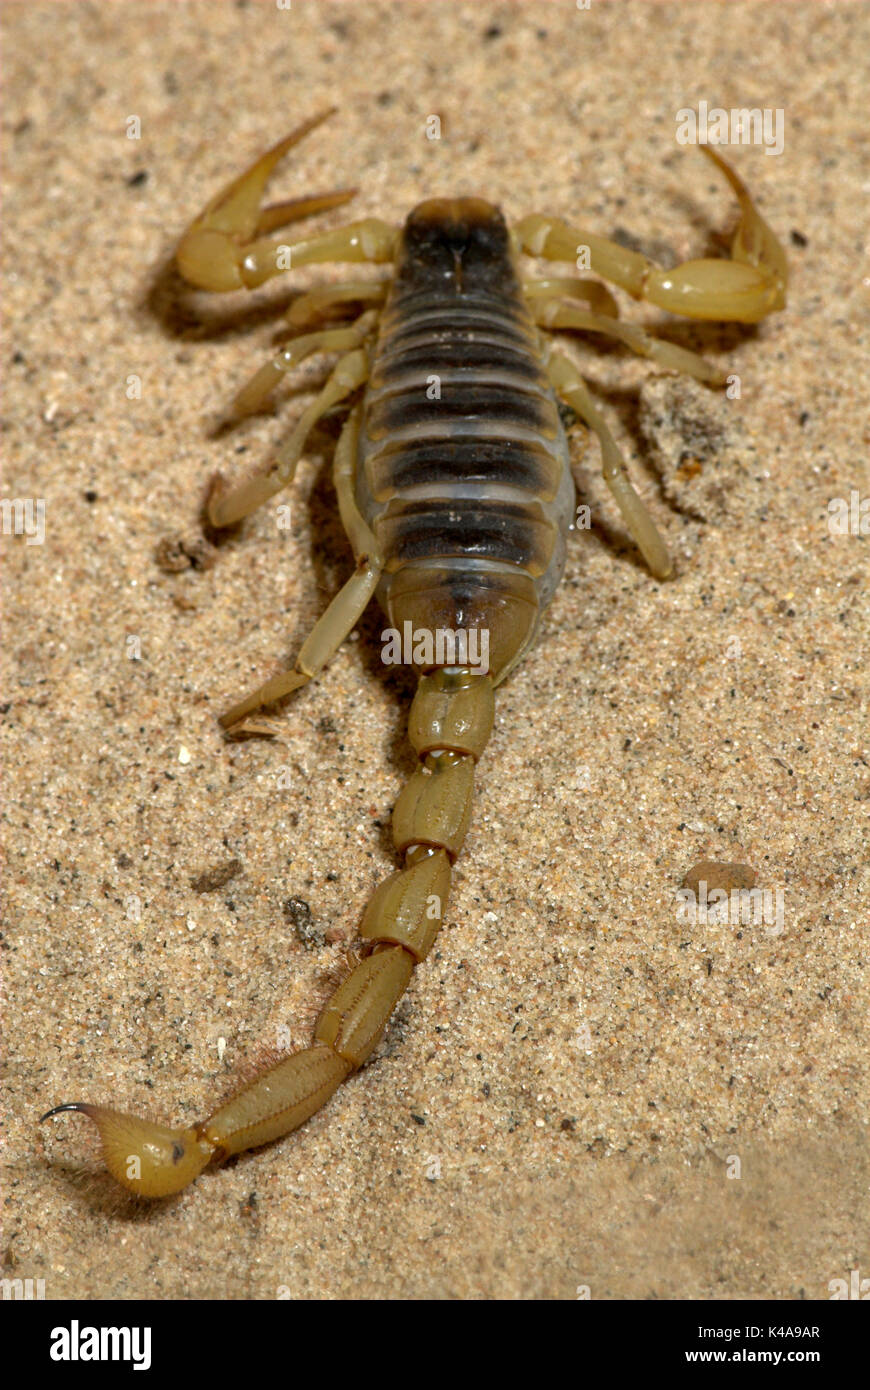 Scorpion, Hadrurus arizonensis, Arizona, sting in tail Stock Photo